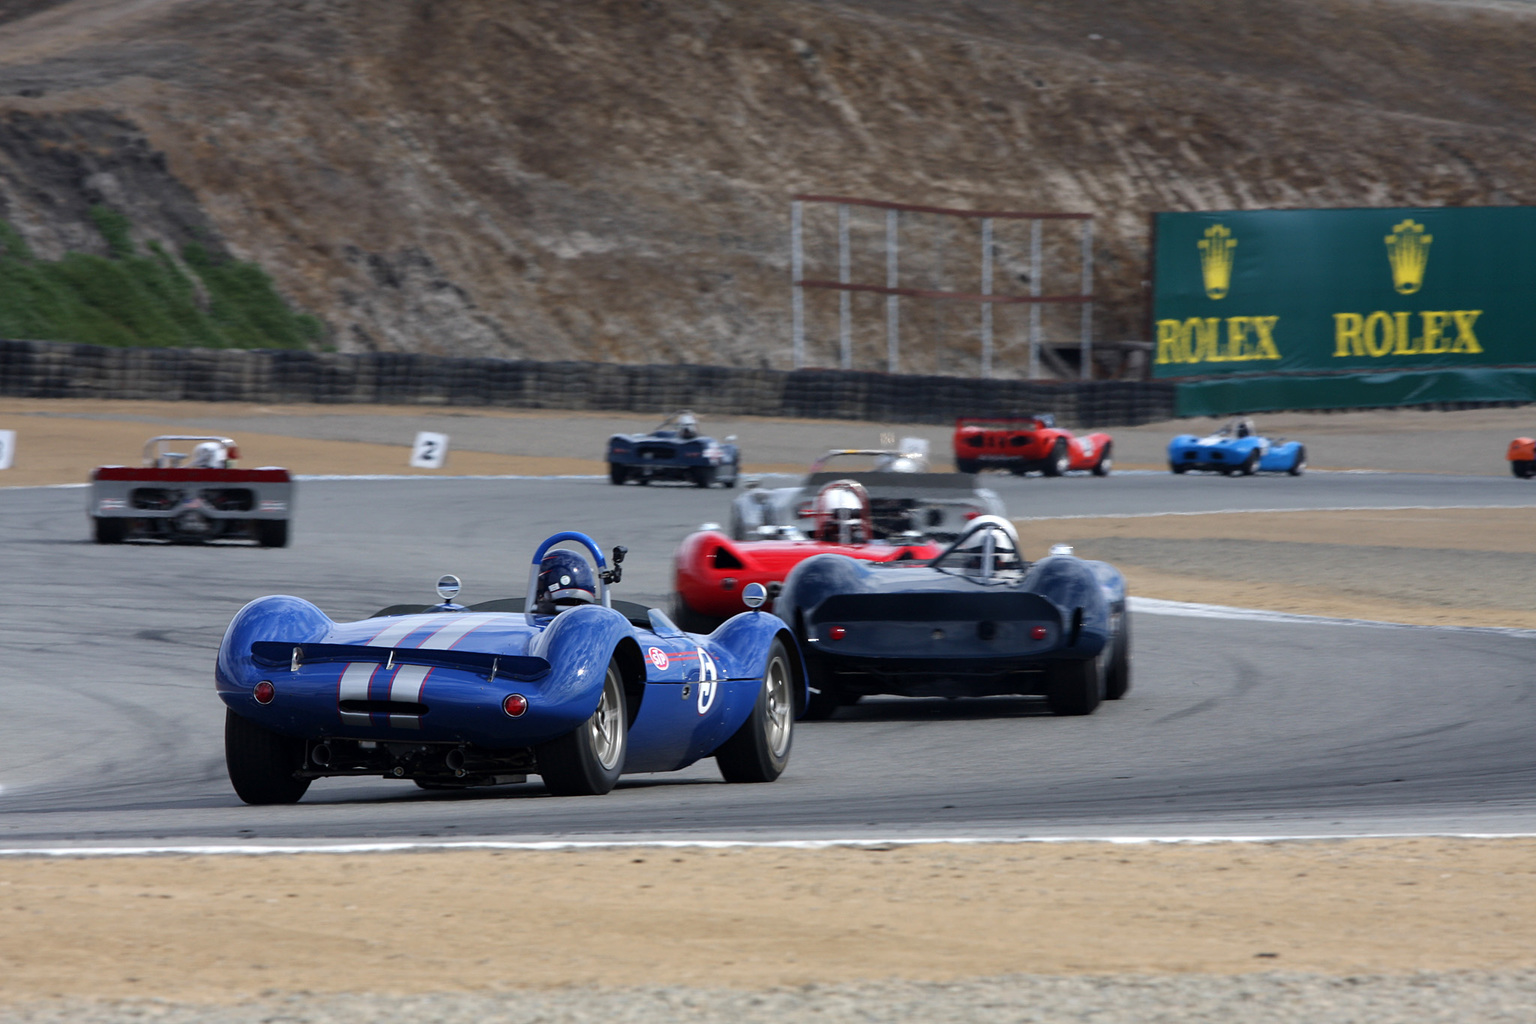 2013 Rolex Monterey Motorsports Reunion-6